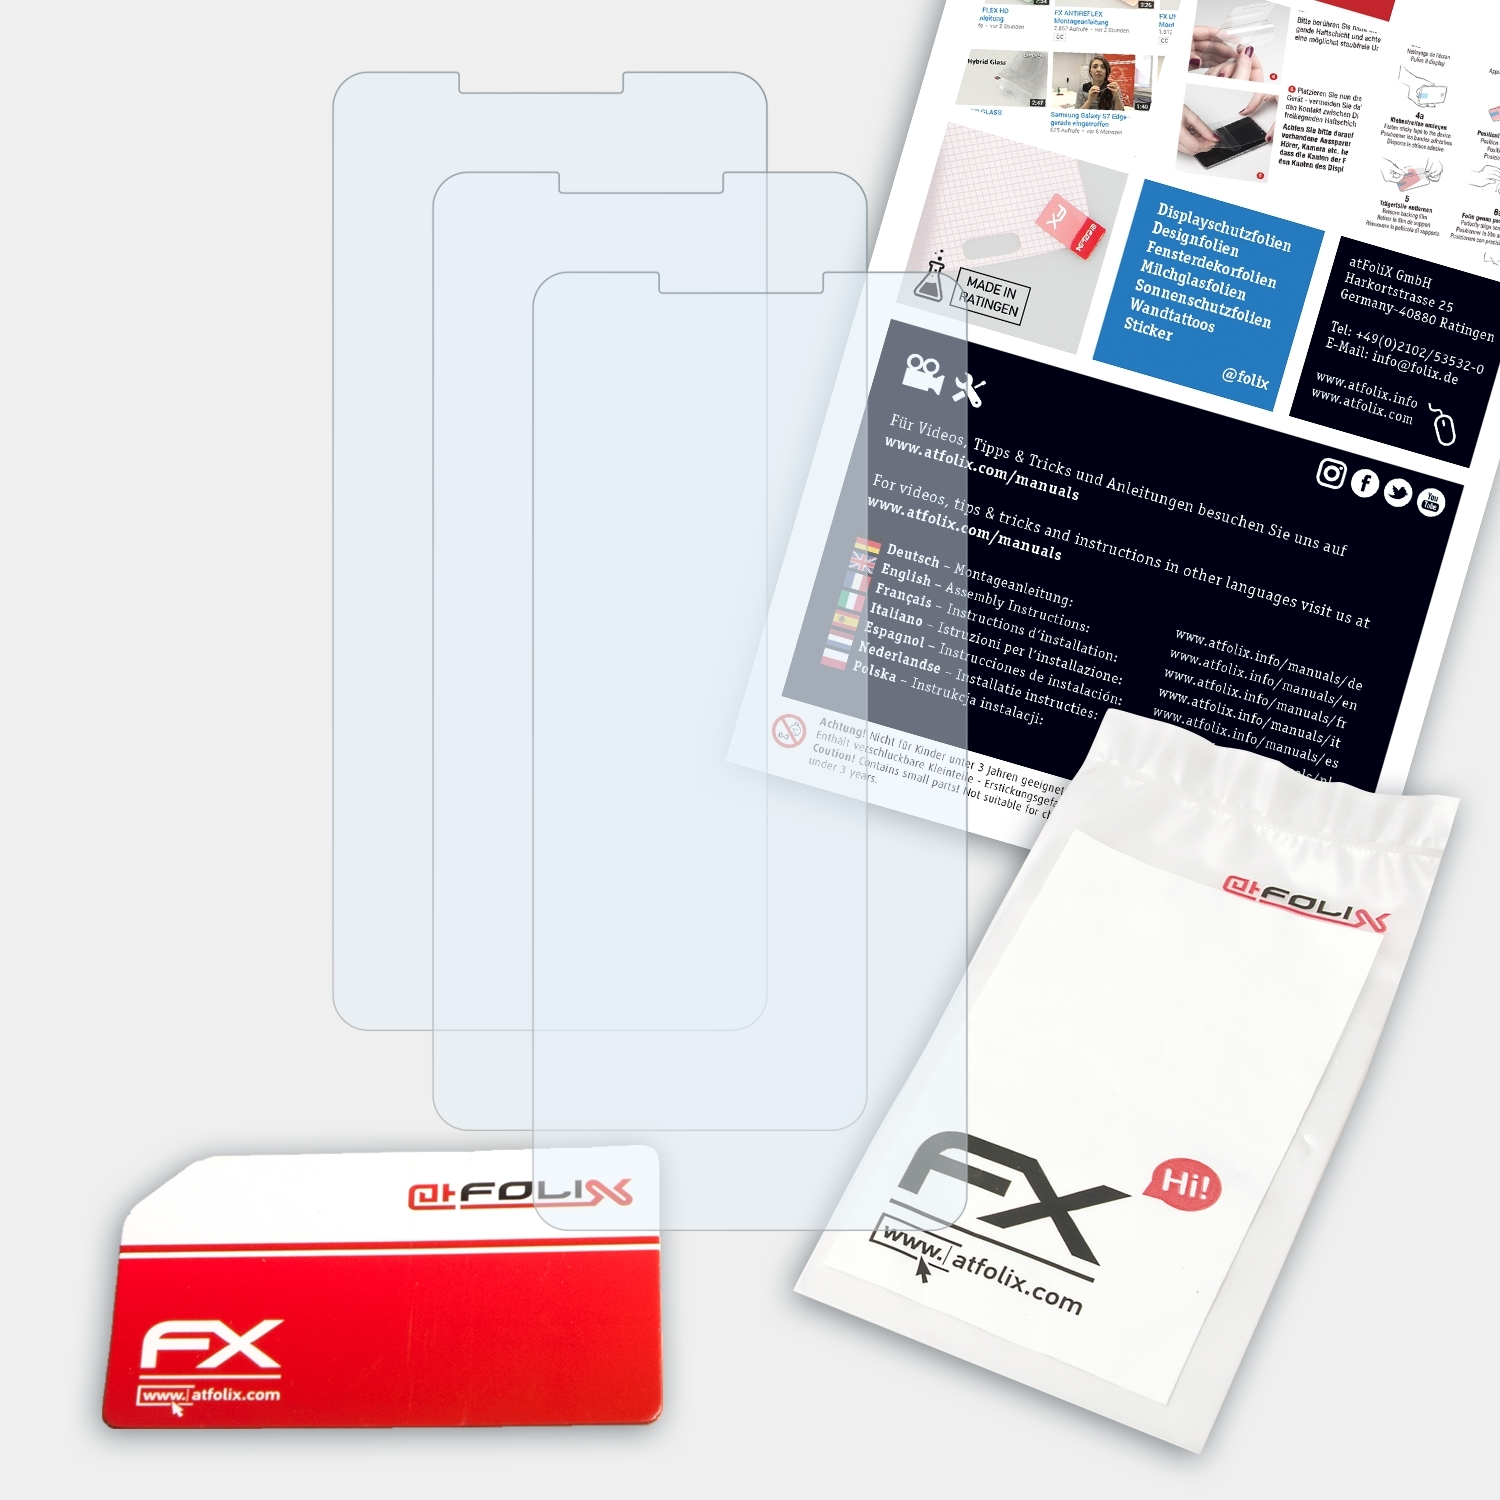 ATFOLIX 3x FX-Clear Homtom H10) Displayschutz(für